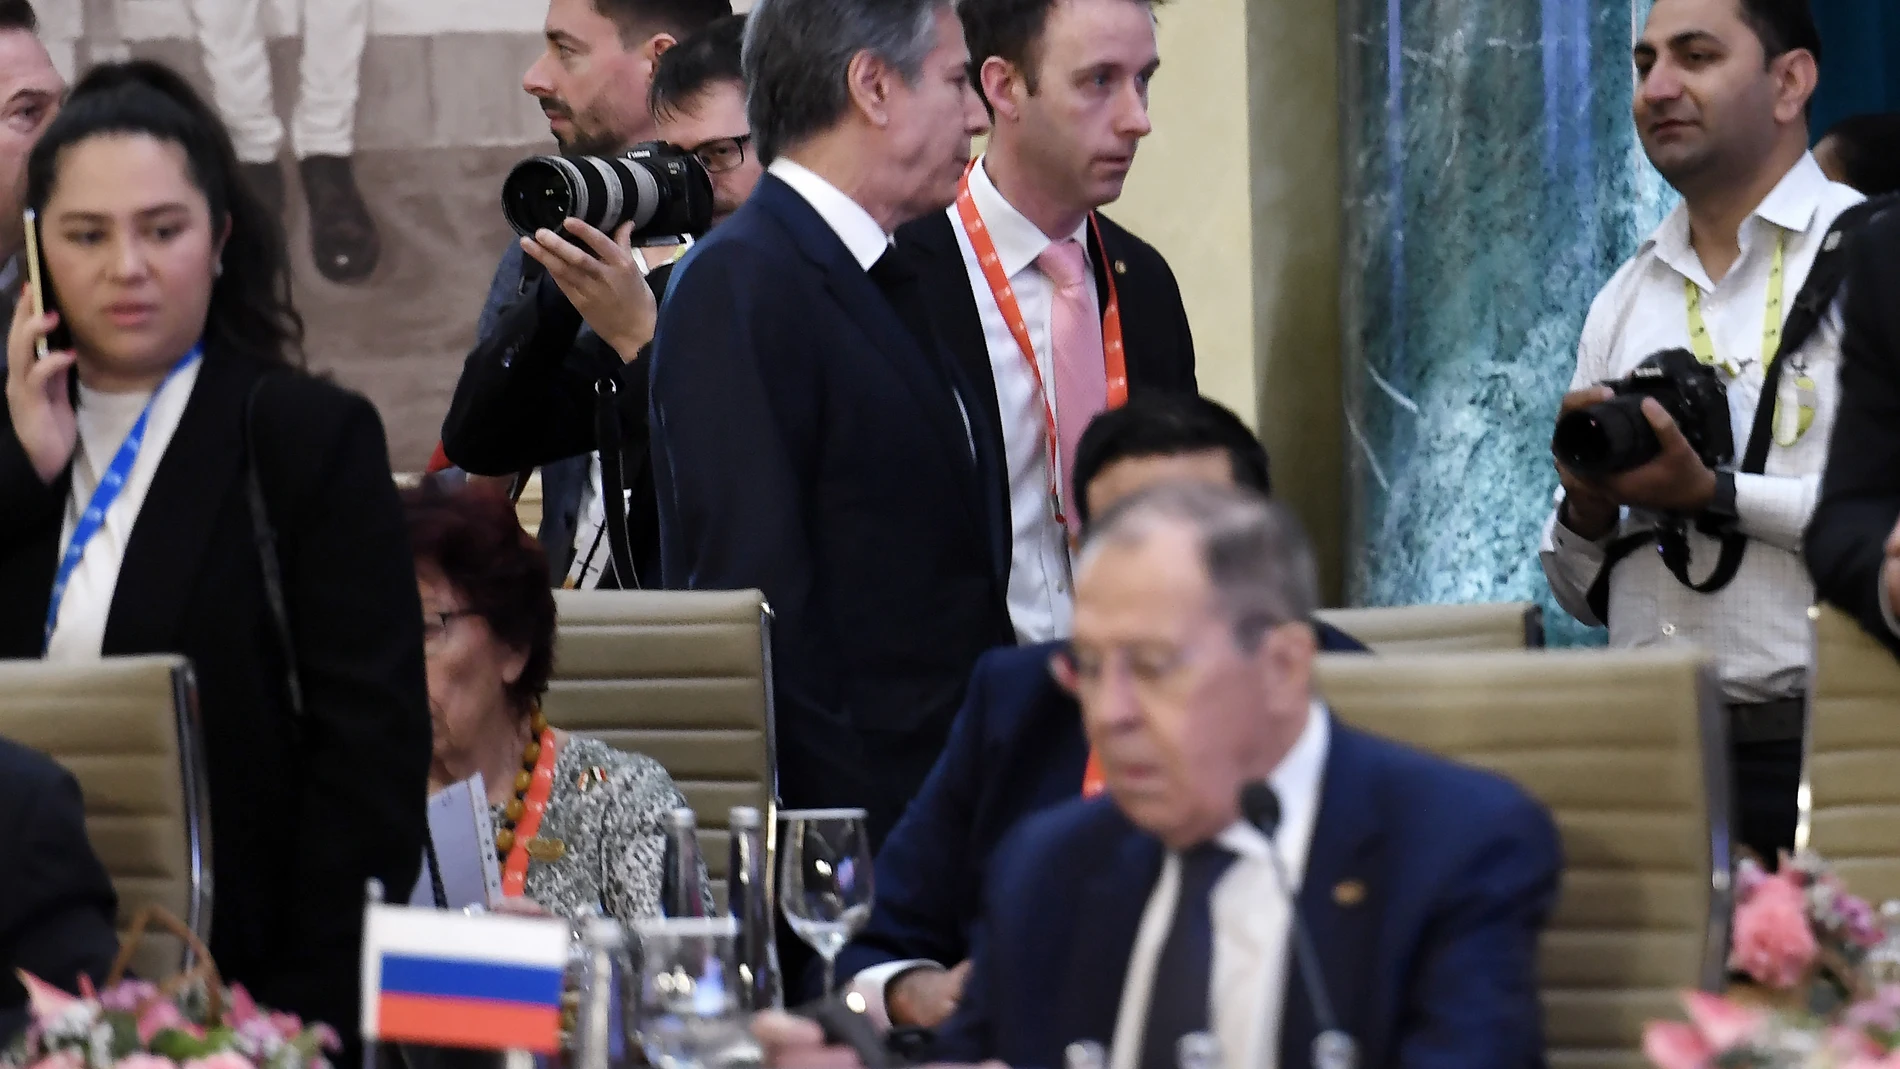 El secretario de Estado, Antony Blinken, habla con sus colegas, mientras el ruso Sergei Lavrov permanece sentado